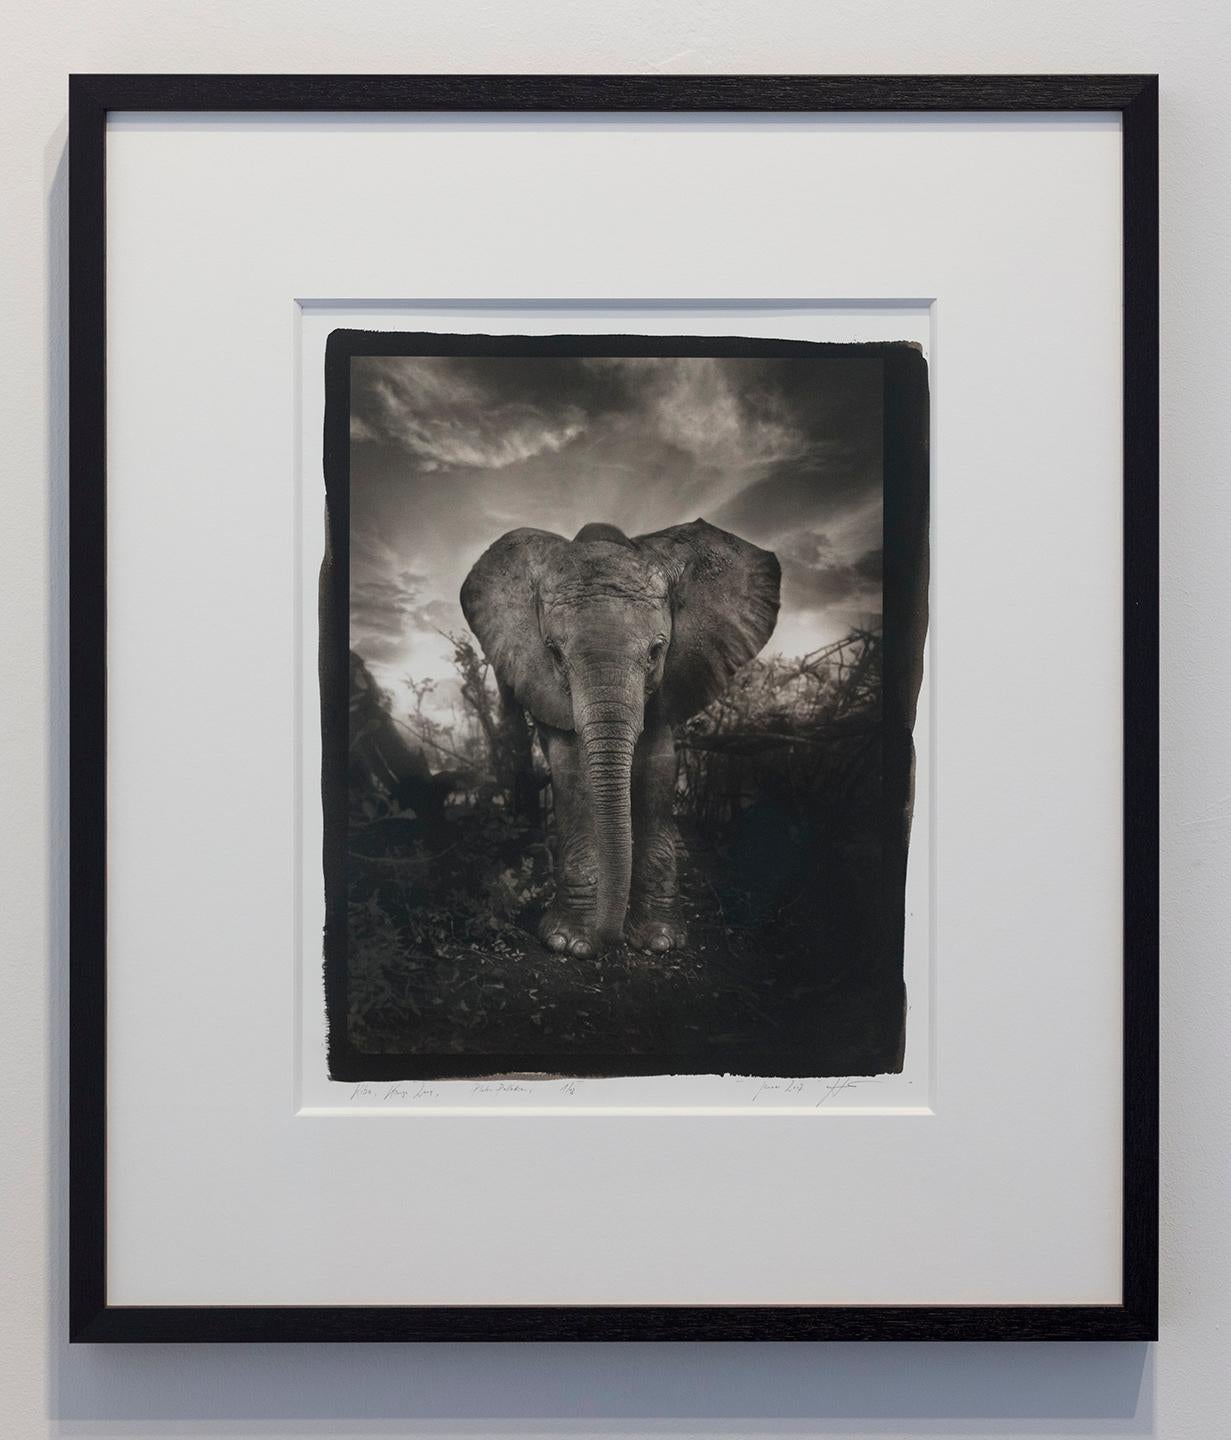 Kibo - Platin Palladium Druck, Elefant, Schwarz-Weiß-Fotografie, Wildtiere – Photograph von Joachim Schmeisser